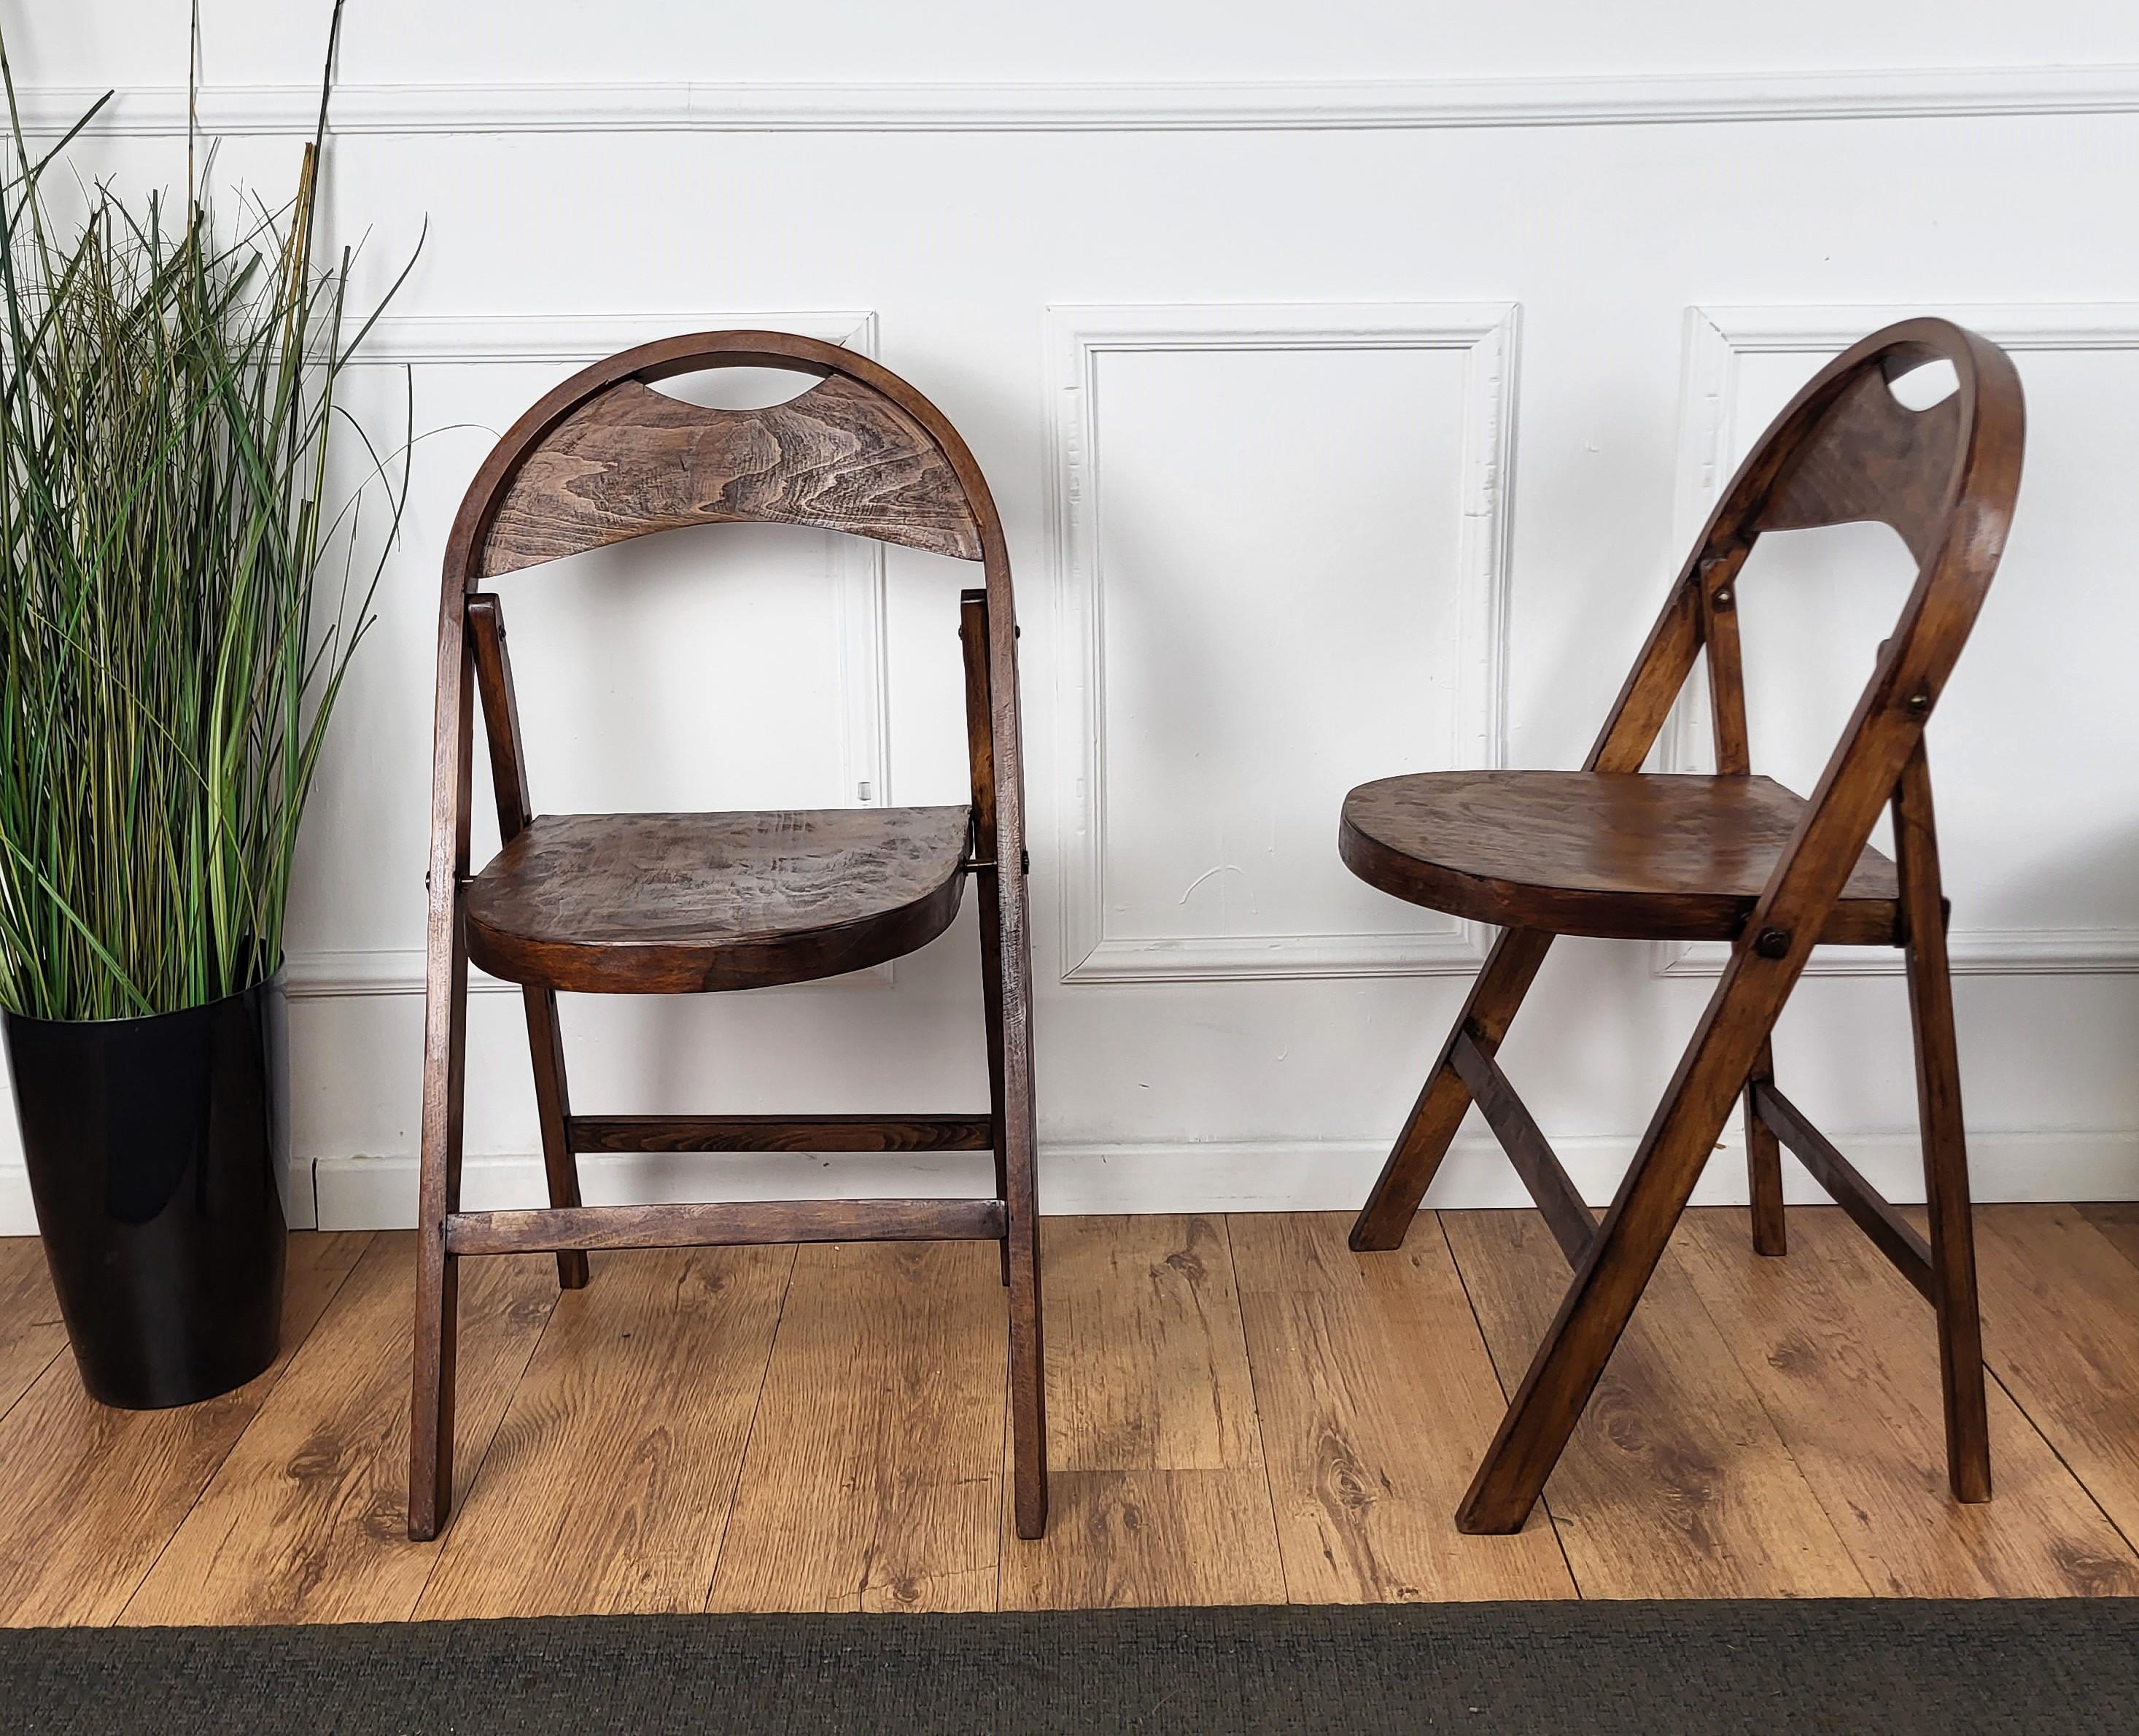 Paire de chaises pliantes modèle B751 conçues au début du XXe siècle par Thonet, fabriquées au début des années 1960 à l'usine Thonet de Radomsko (centre de la Pologne). Les chaises sont en bon état, sans signe majeur d'utilisation. Fabriqué en bois